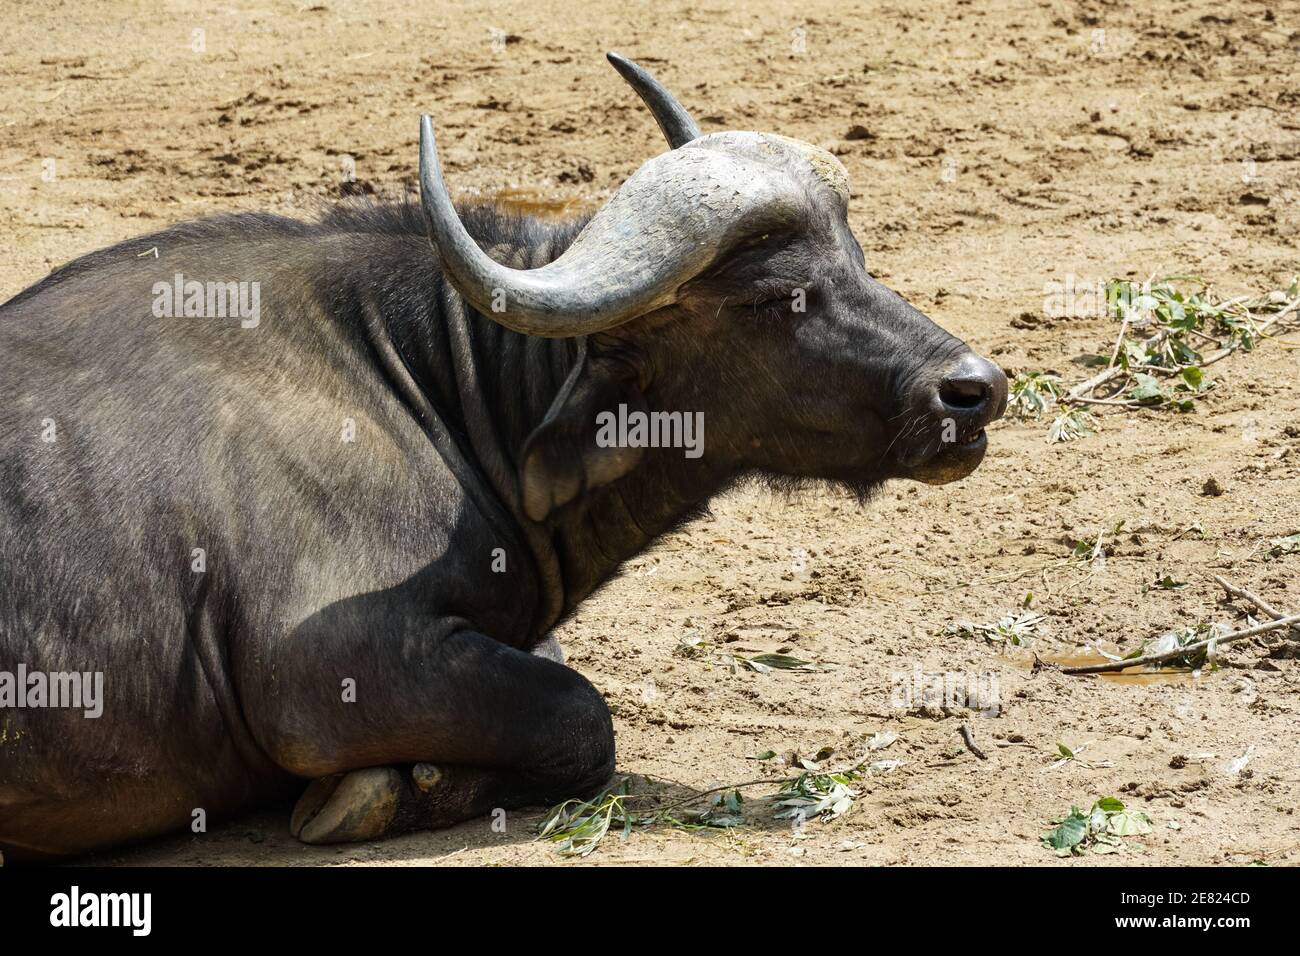 Búfalo de cabo, Syncerus caffer subespecie de búfalo africano Syncerus caffer Foto de stock